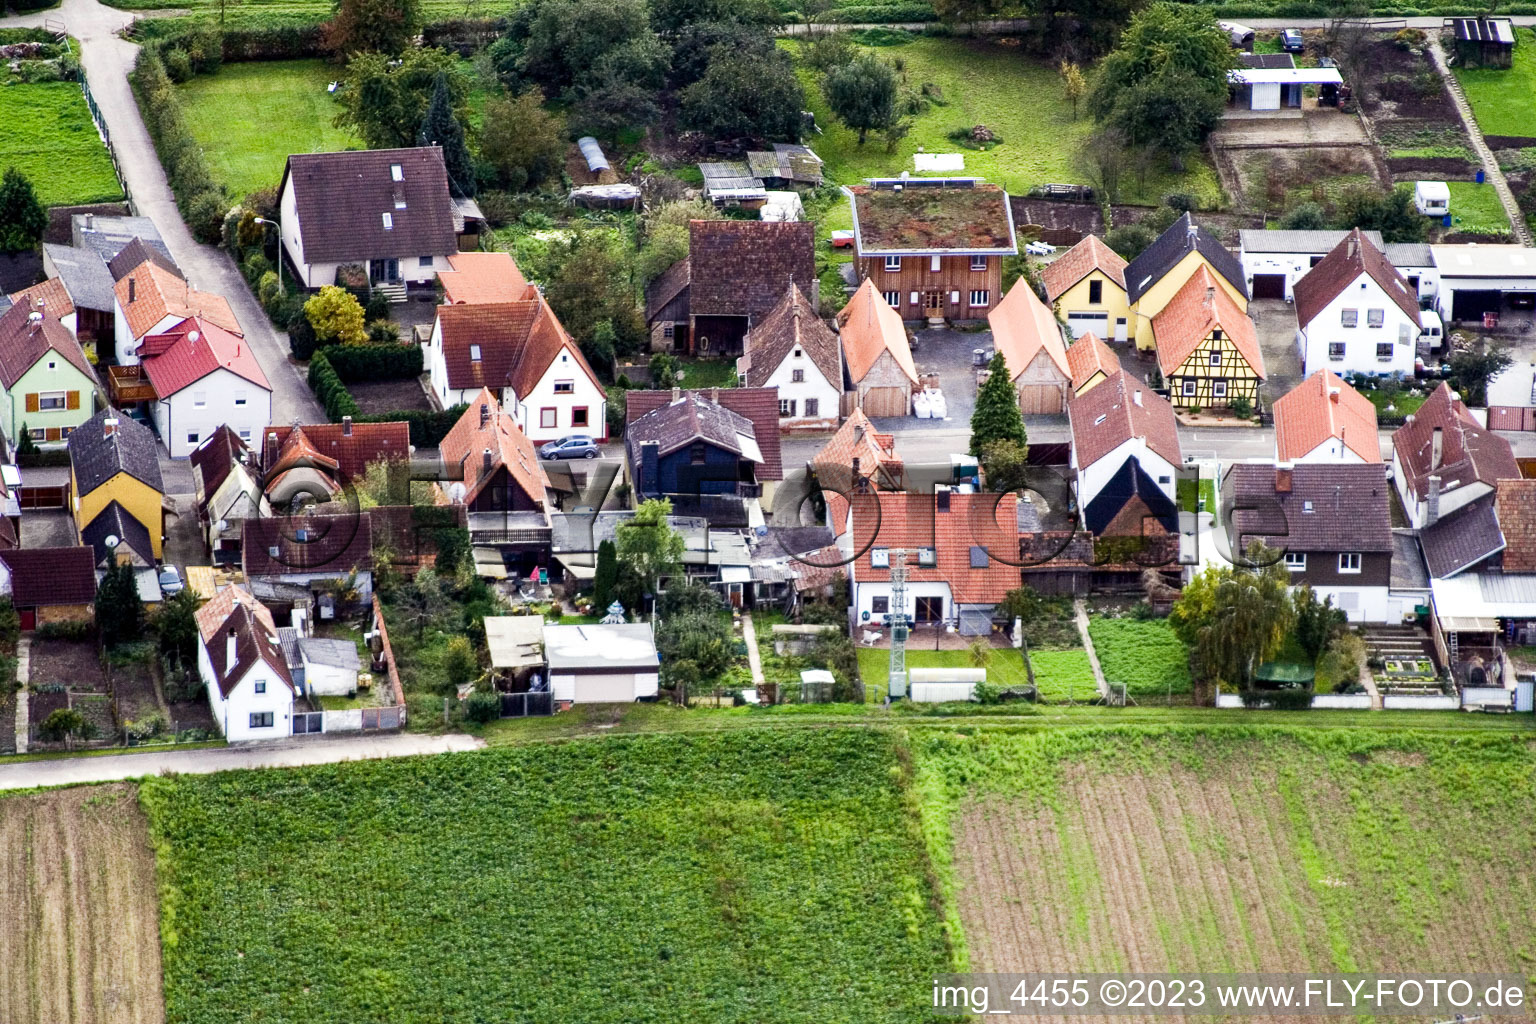 Gänsried à Freckenfeld dans le département Rhénanie-Palatinat, Allemagne vue du ciel